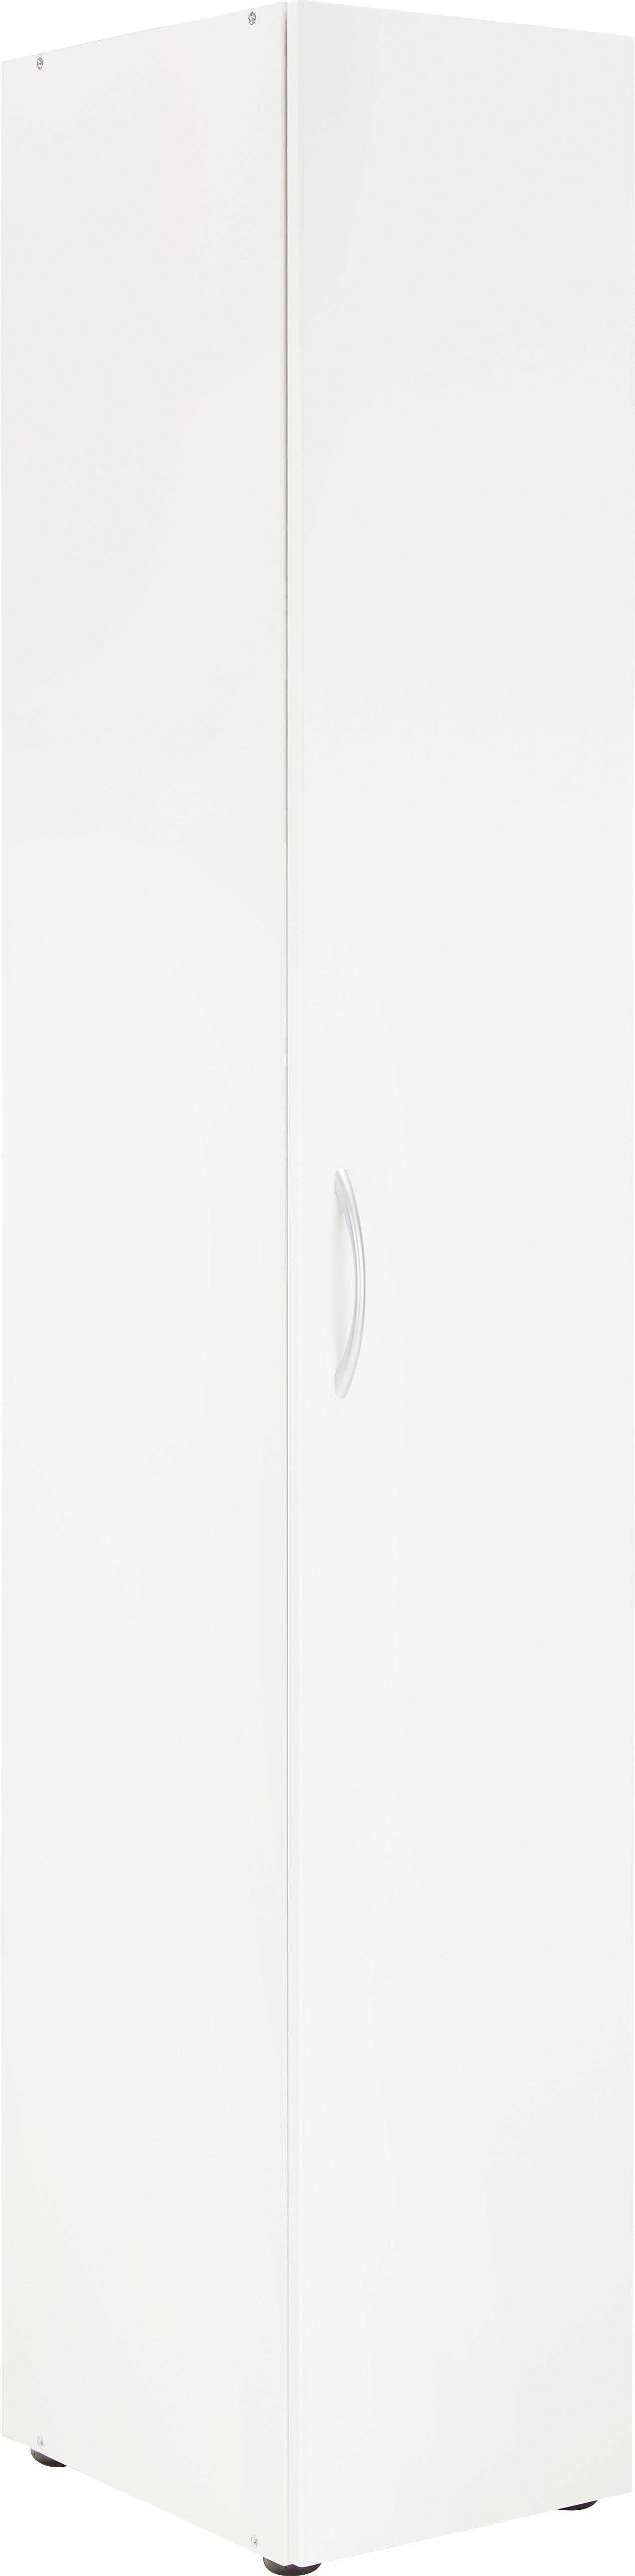 Víceúčelová Skříň Mrk - bílá, Konvenční, kompozitní dřevo/plast (30/185/40cm) - Modern Living